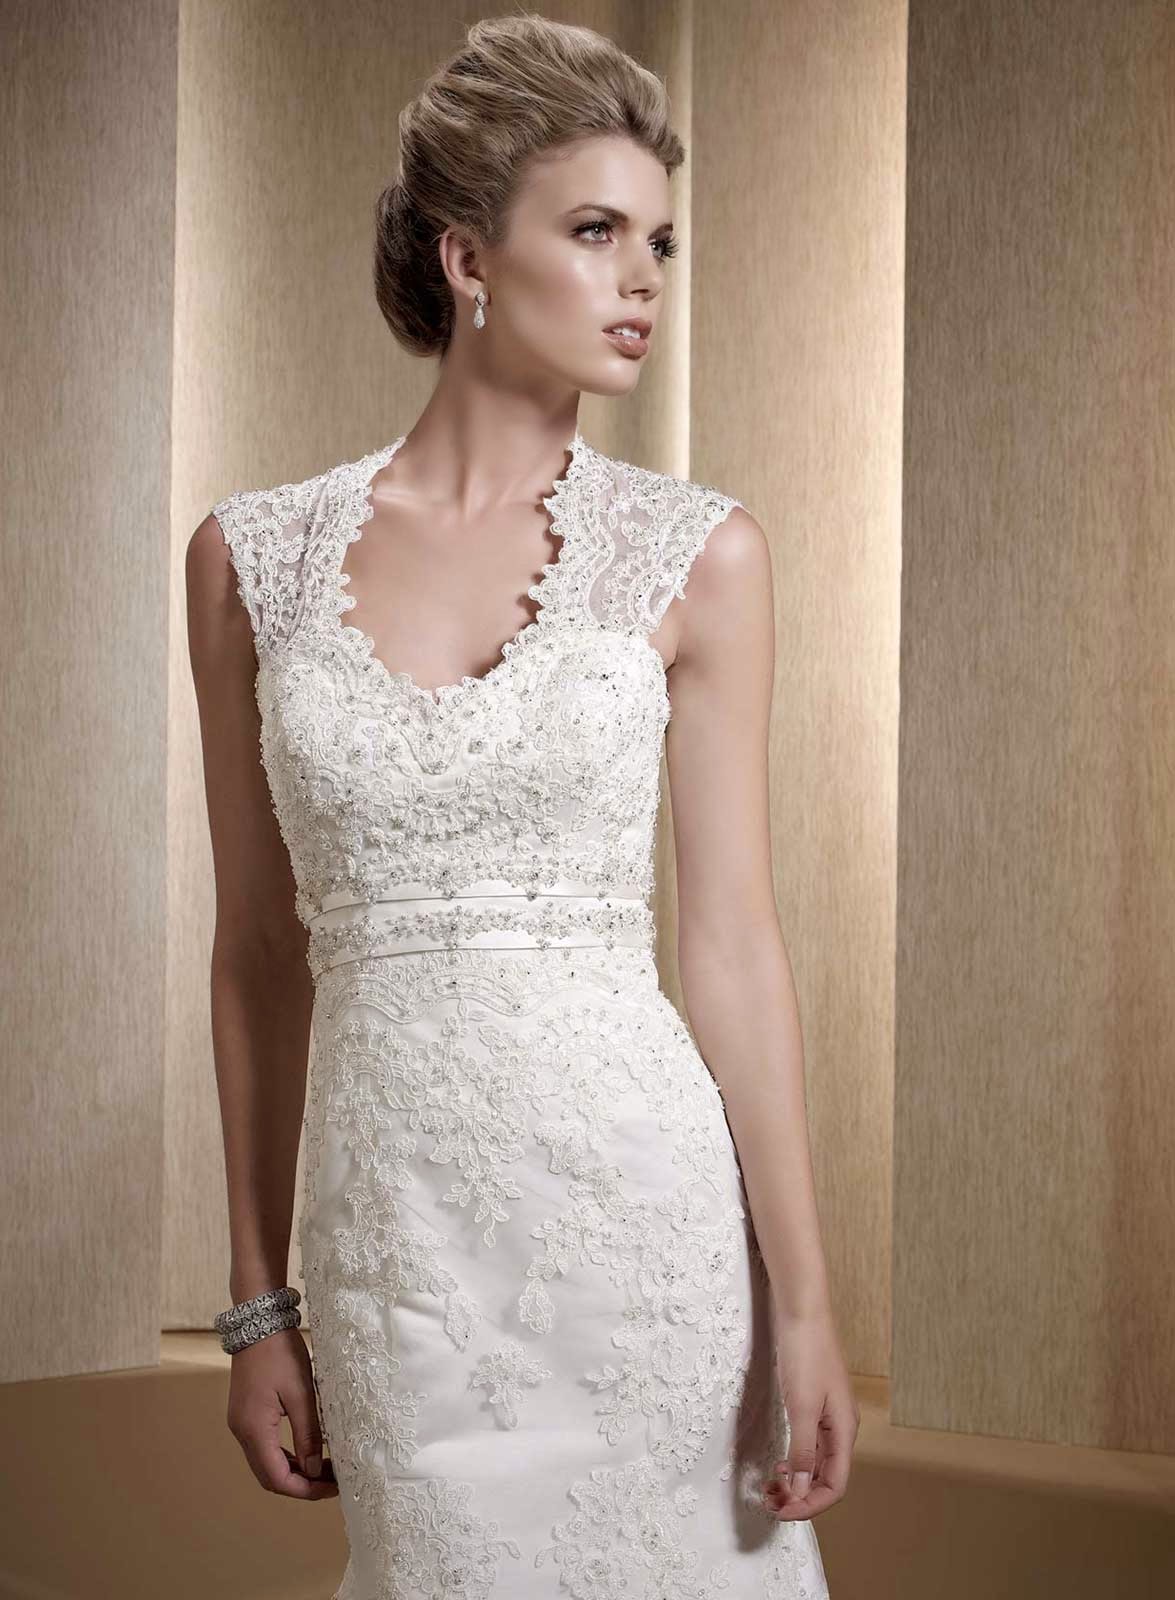 White Ivory Lace Wedding Dresses Design Ideas